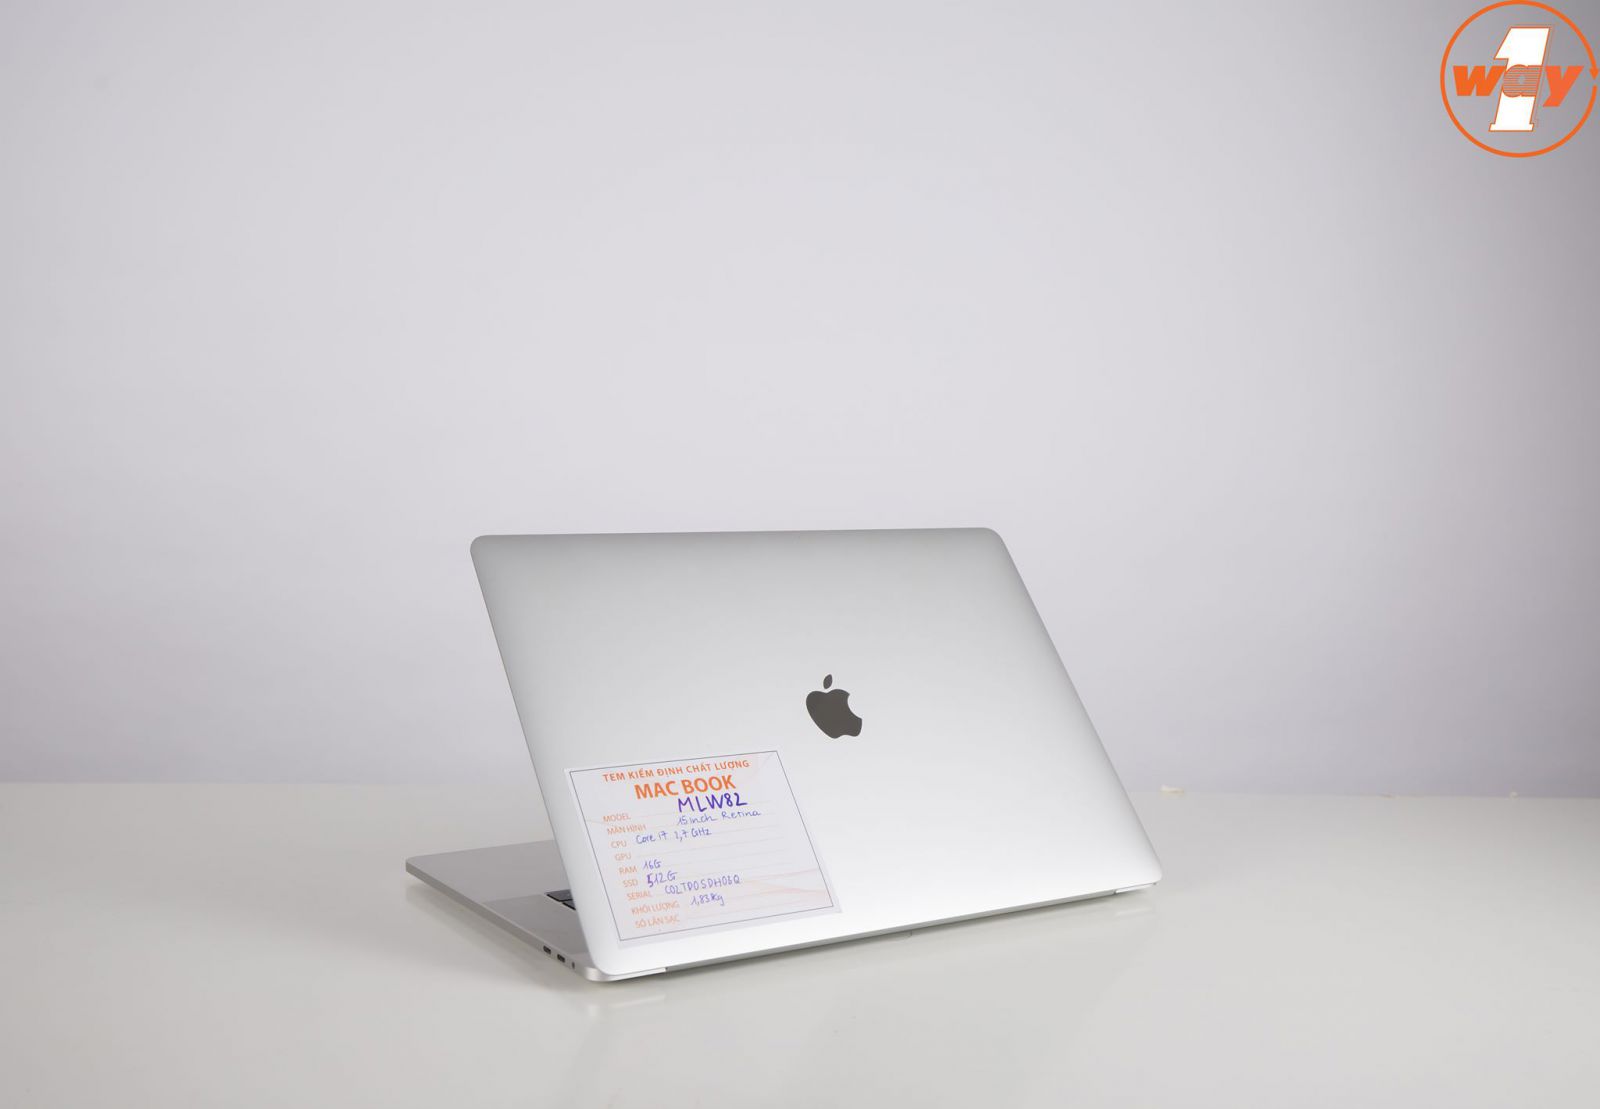 MacBook Pro 2016 đánh dấu sự đột phá về thiết kế